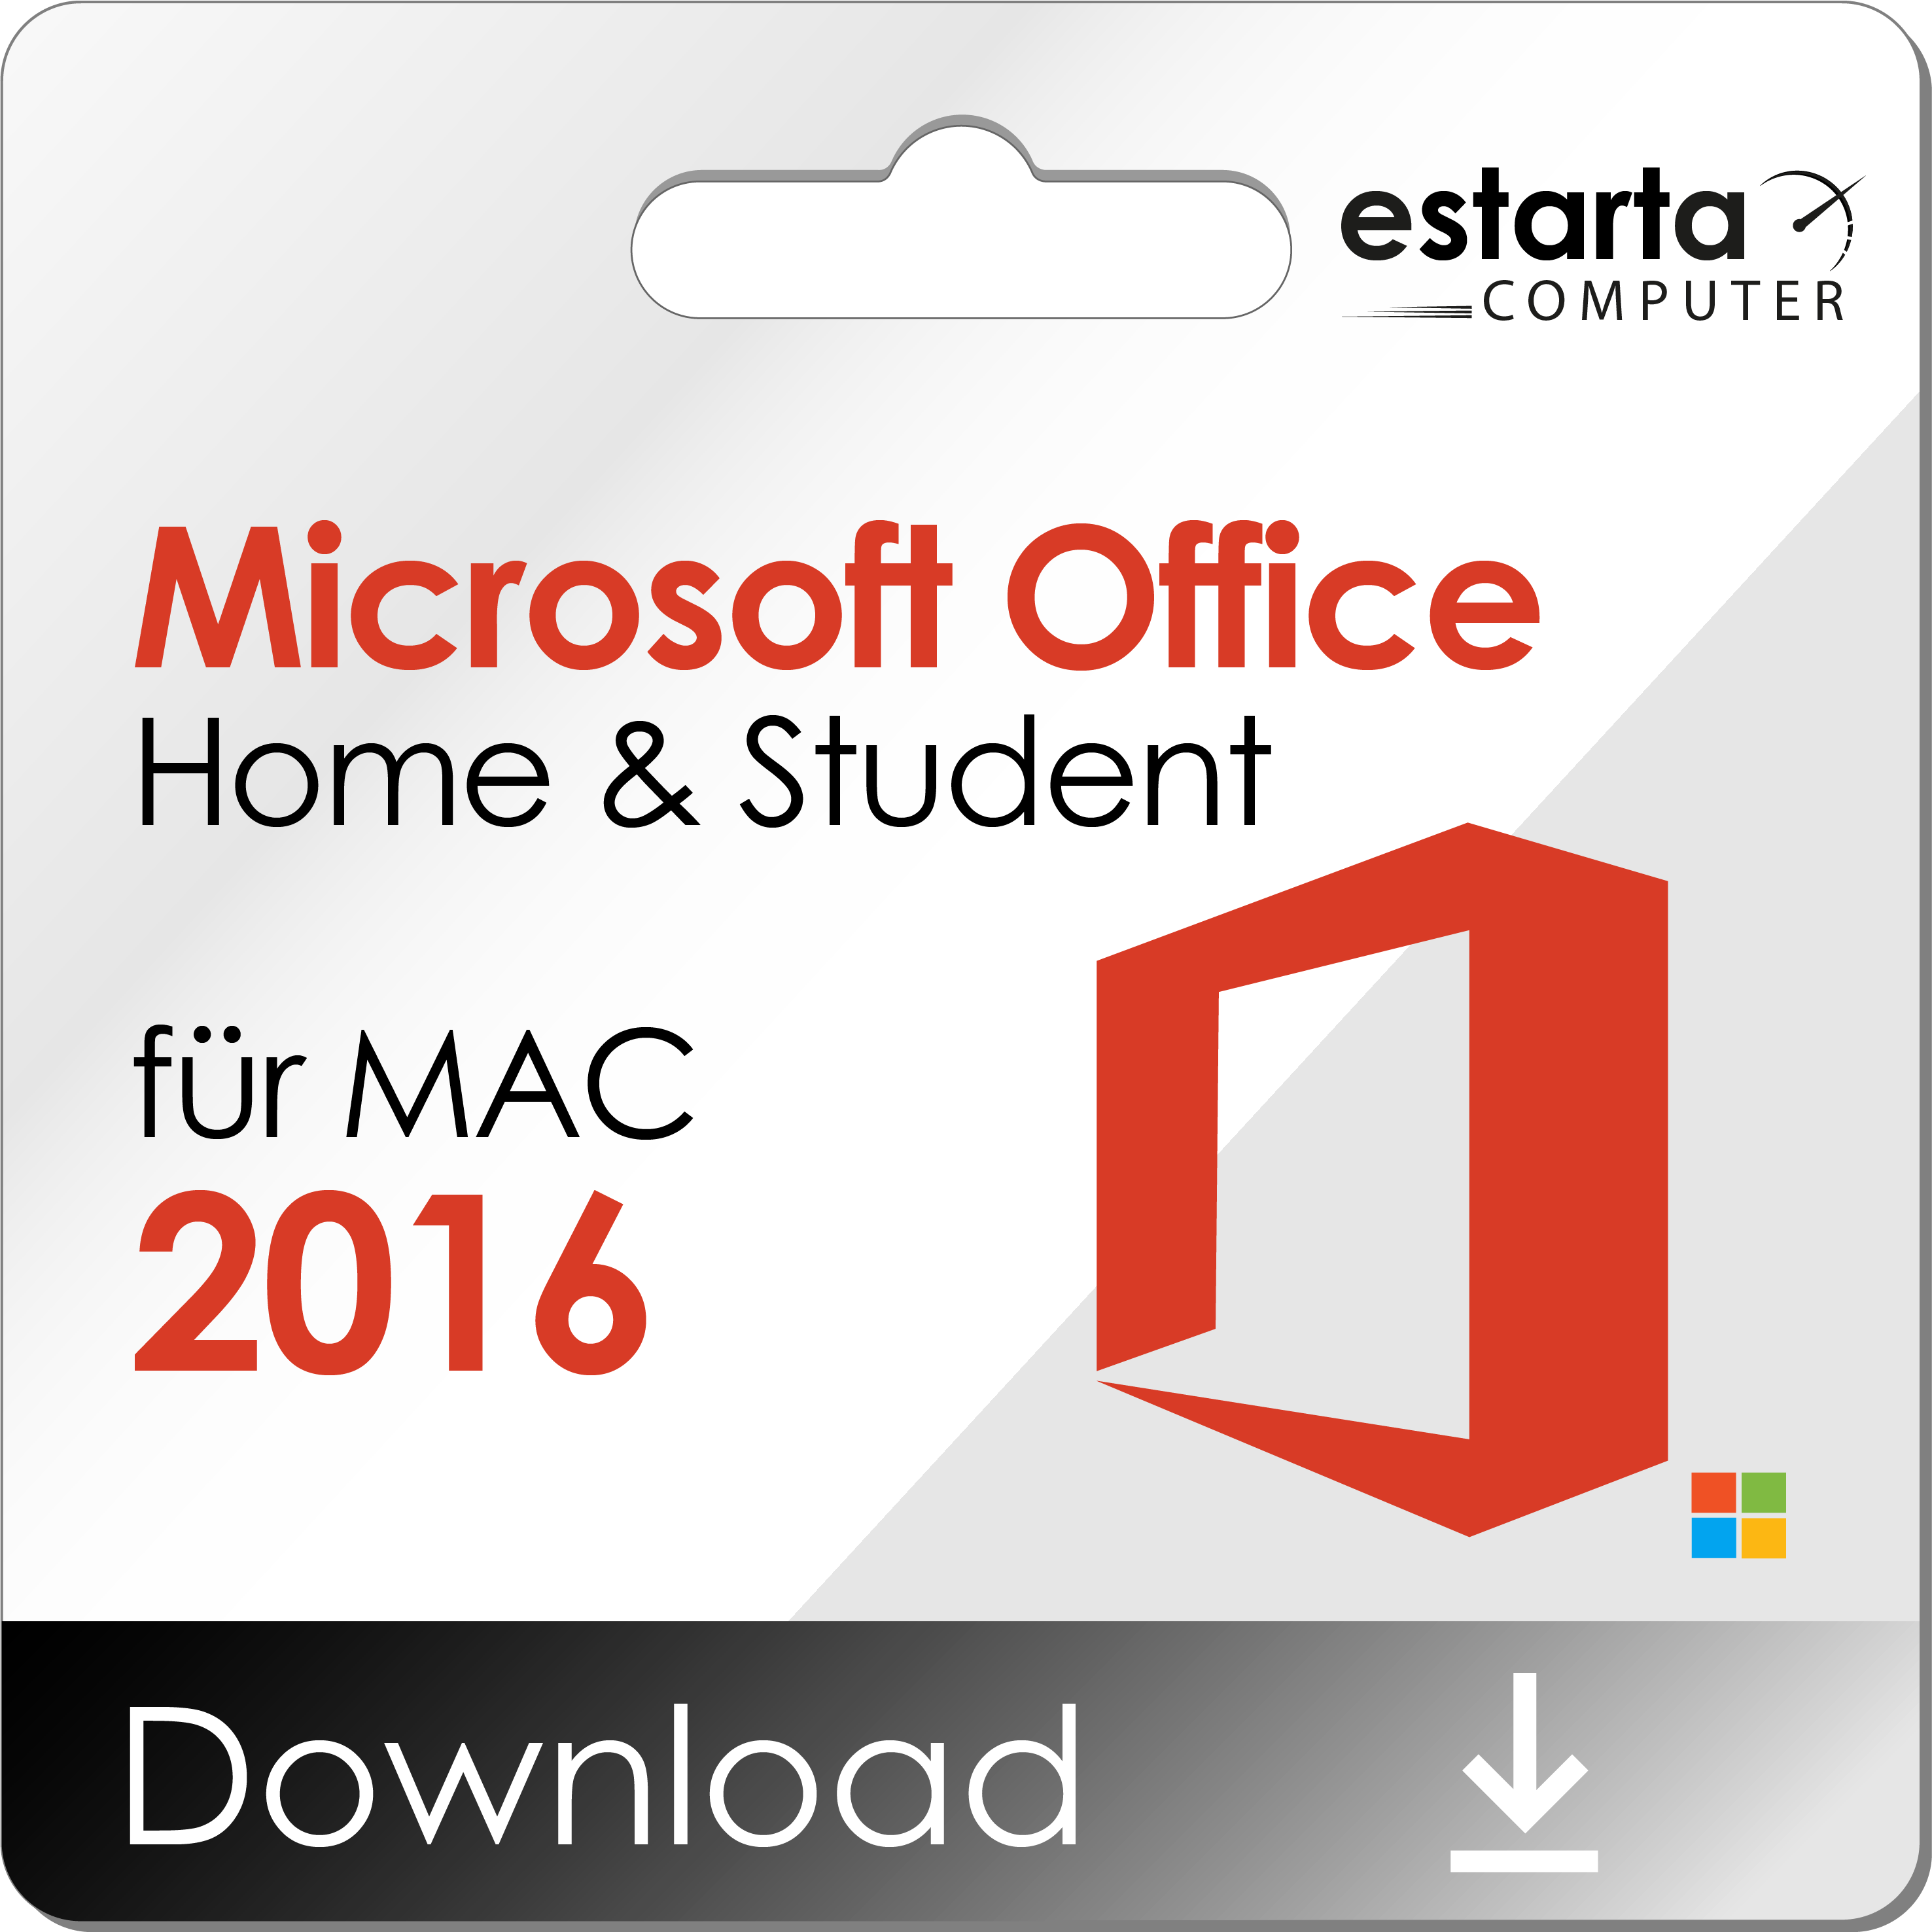 Buy Office for Mac 2016 – Estarta Computer